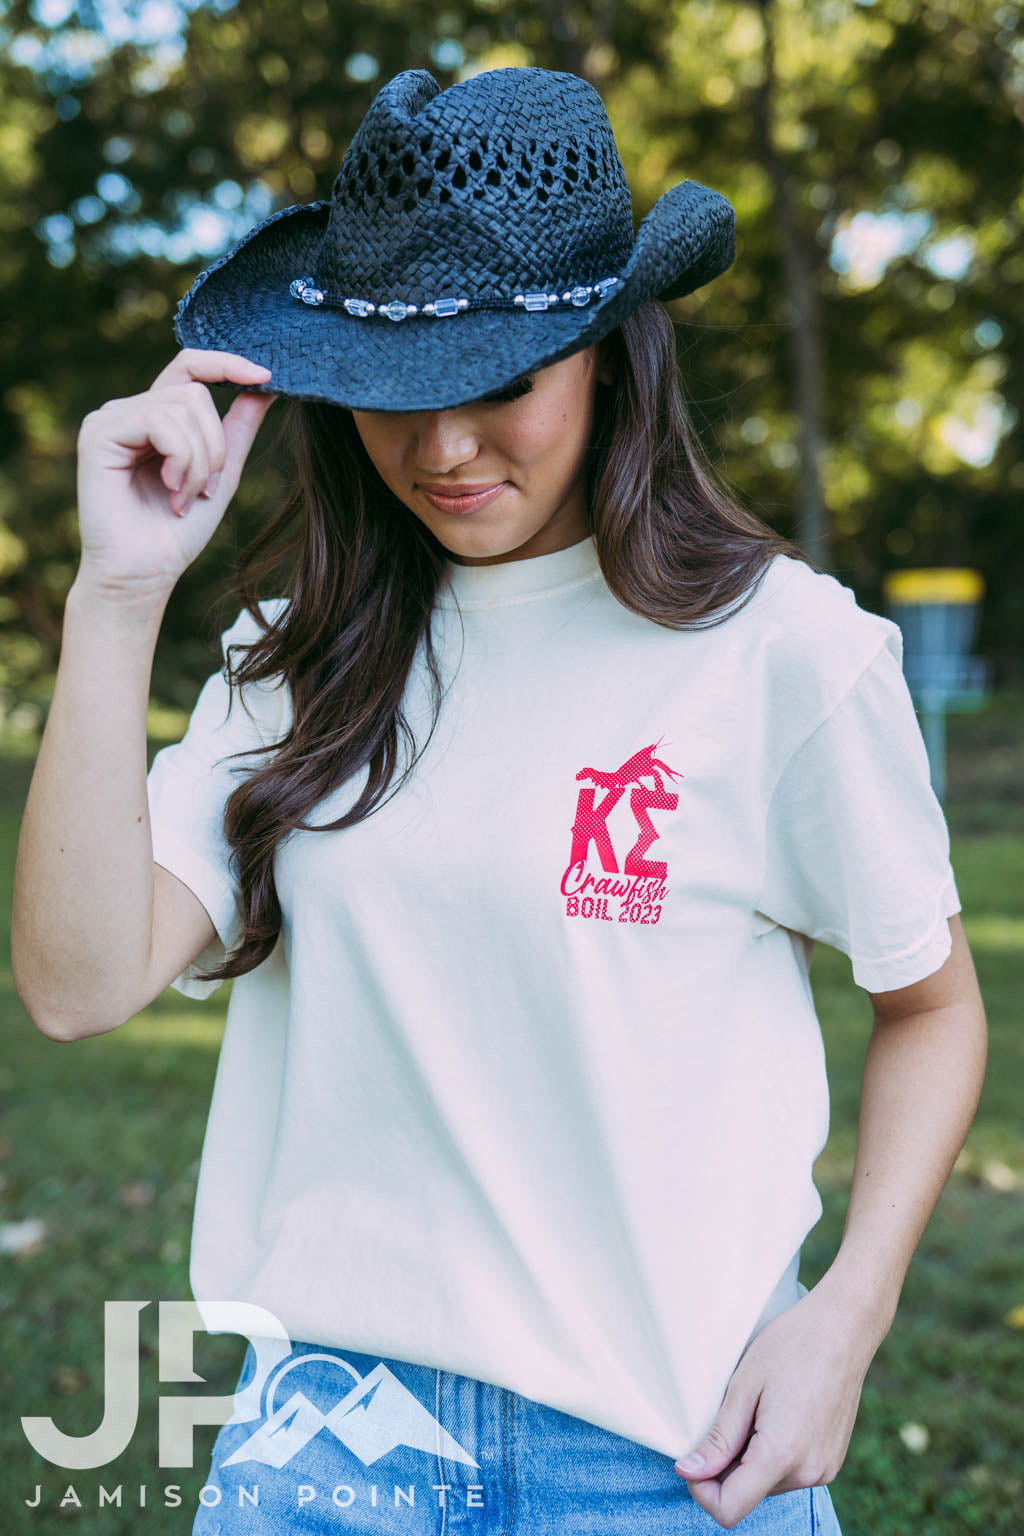 Kappa Sigma Crawfish Boil Tshirt